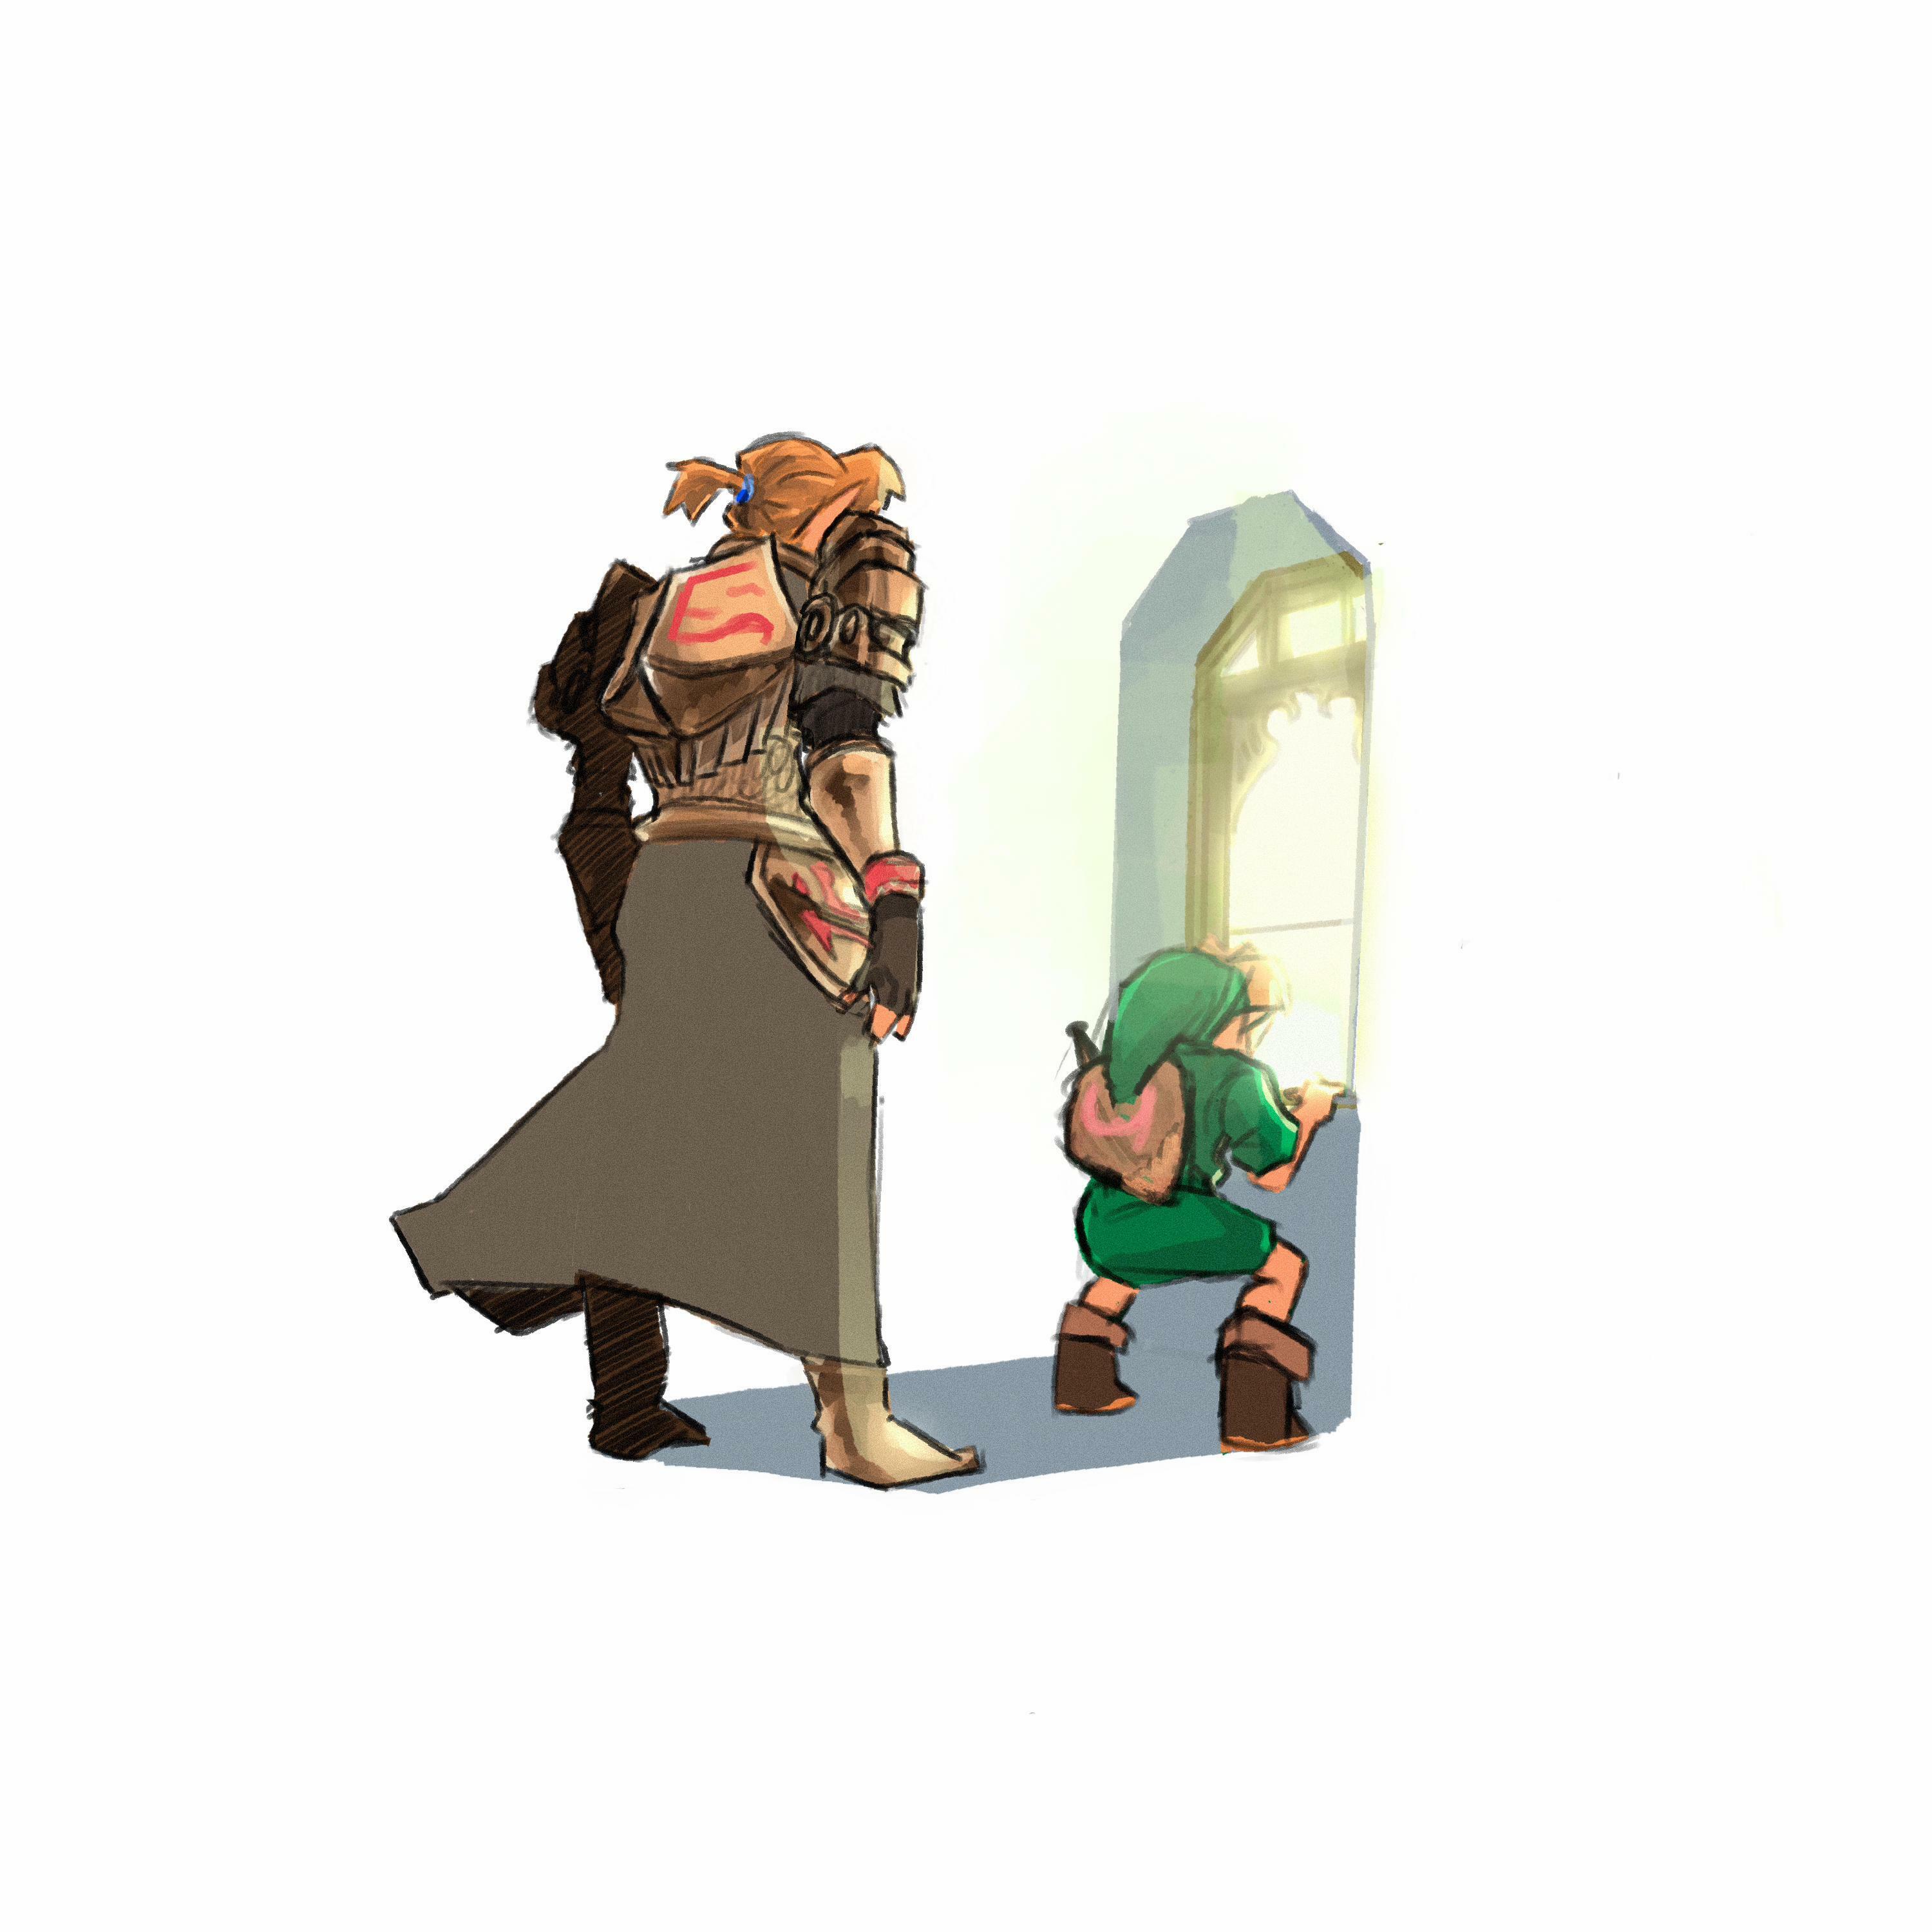 Zelda's Lullaby (The Legend of Zelda: Ocarina of Time) [Timeless Variation]